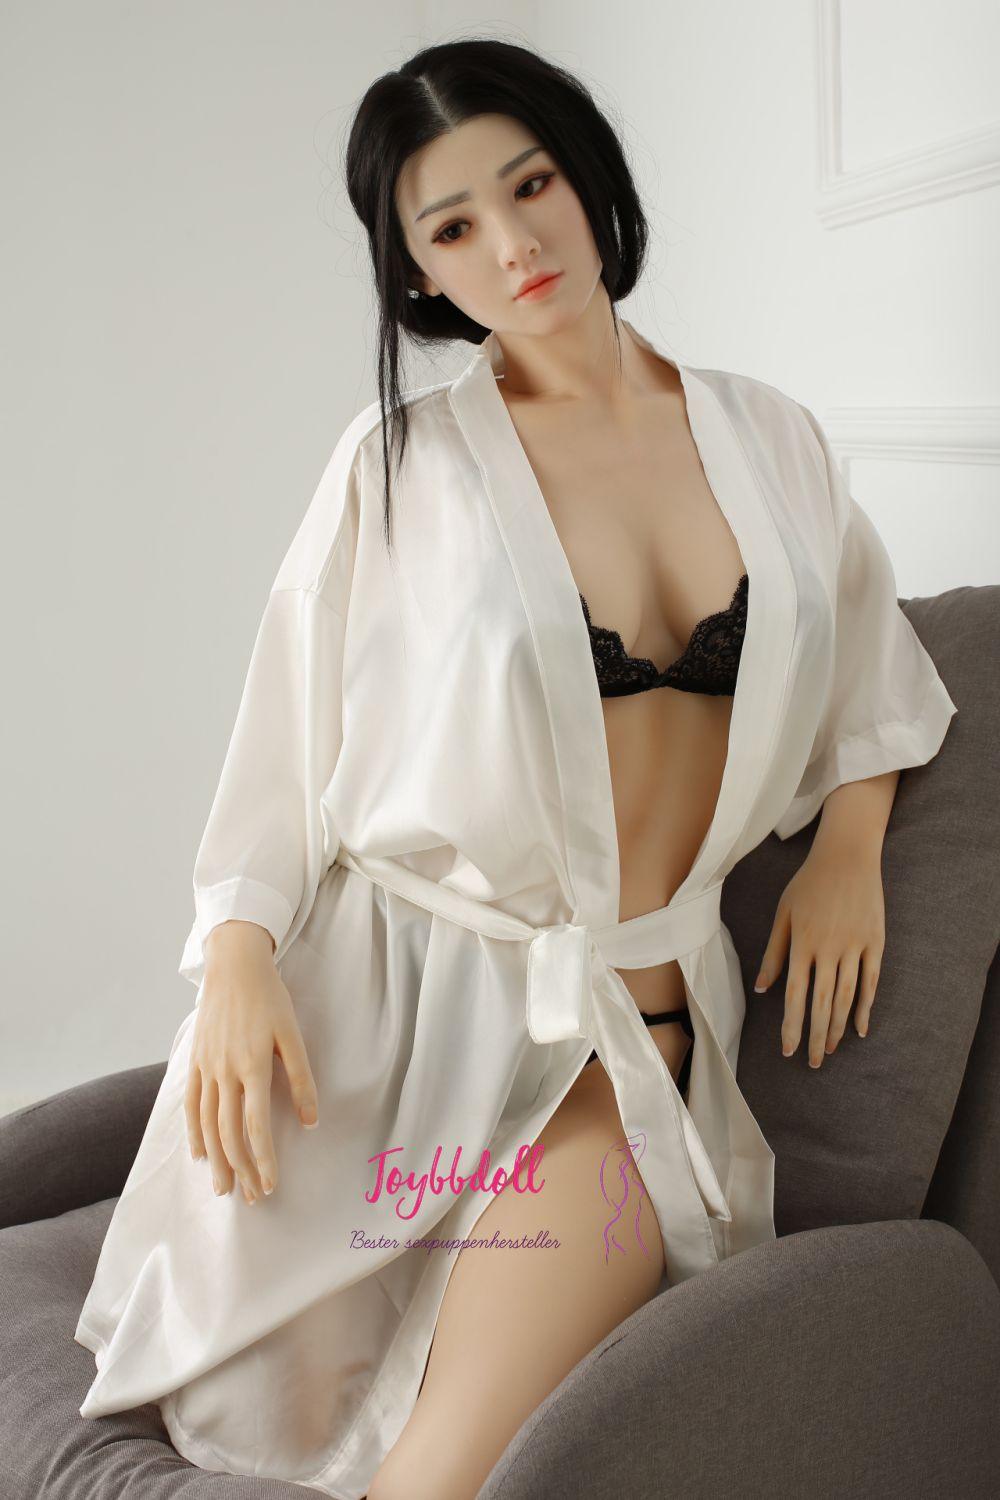 Crystal-Asien Schauspielerin(22 Jahre) - Joybbdoll-CST Doll